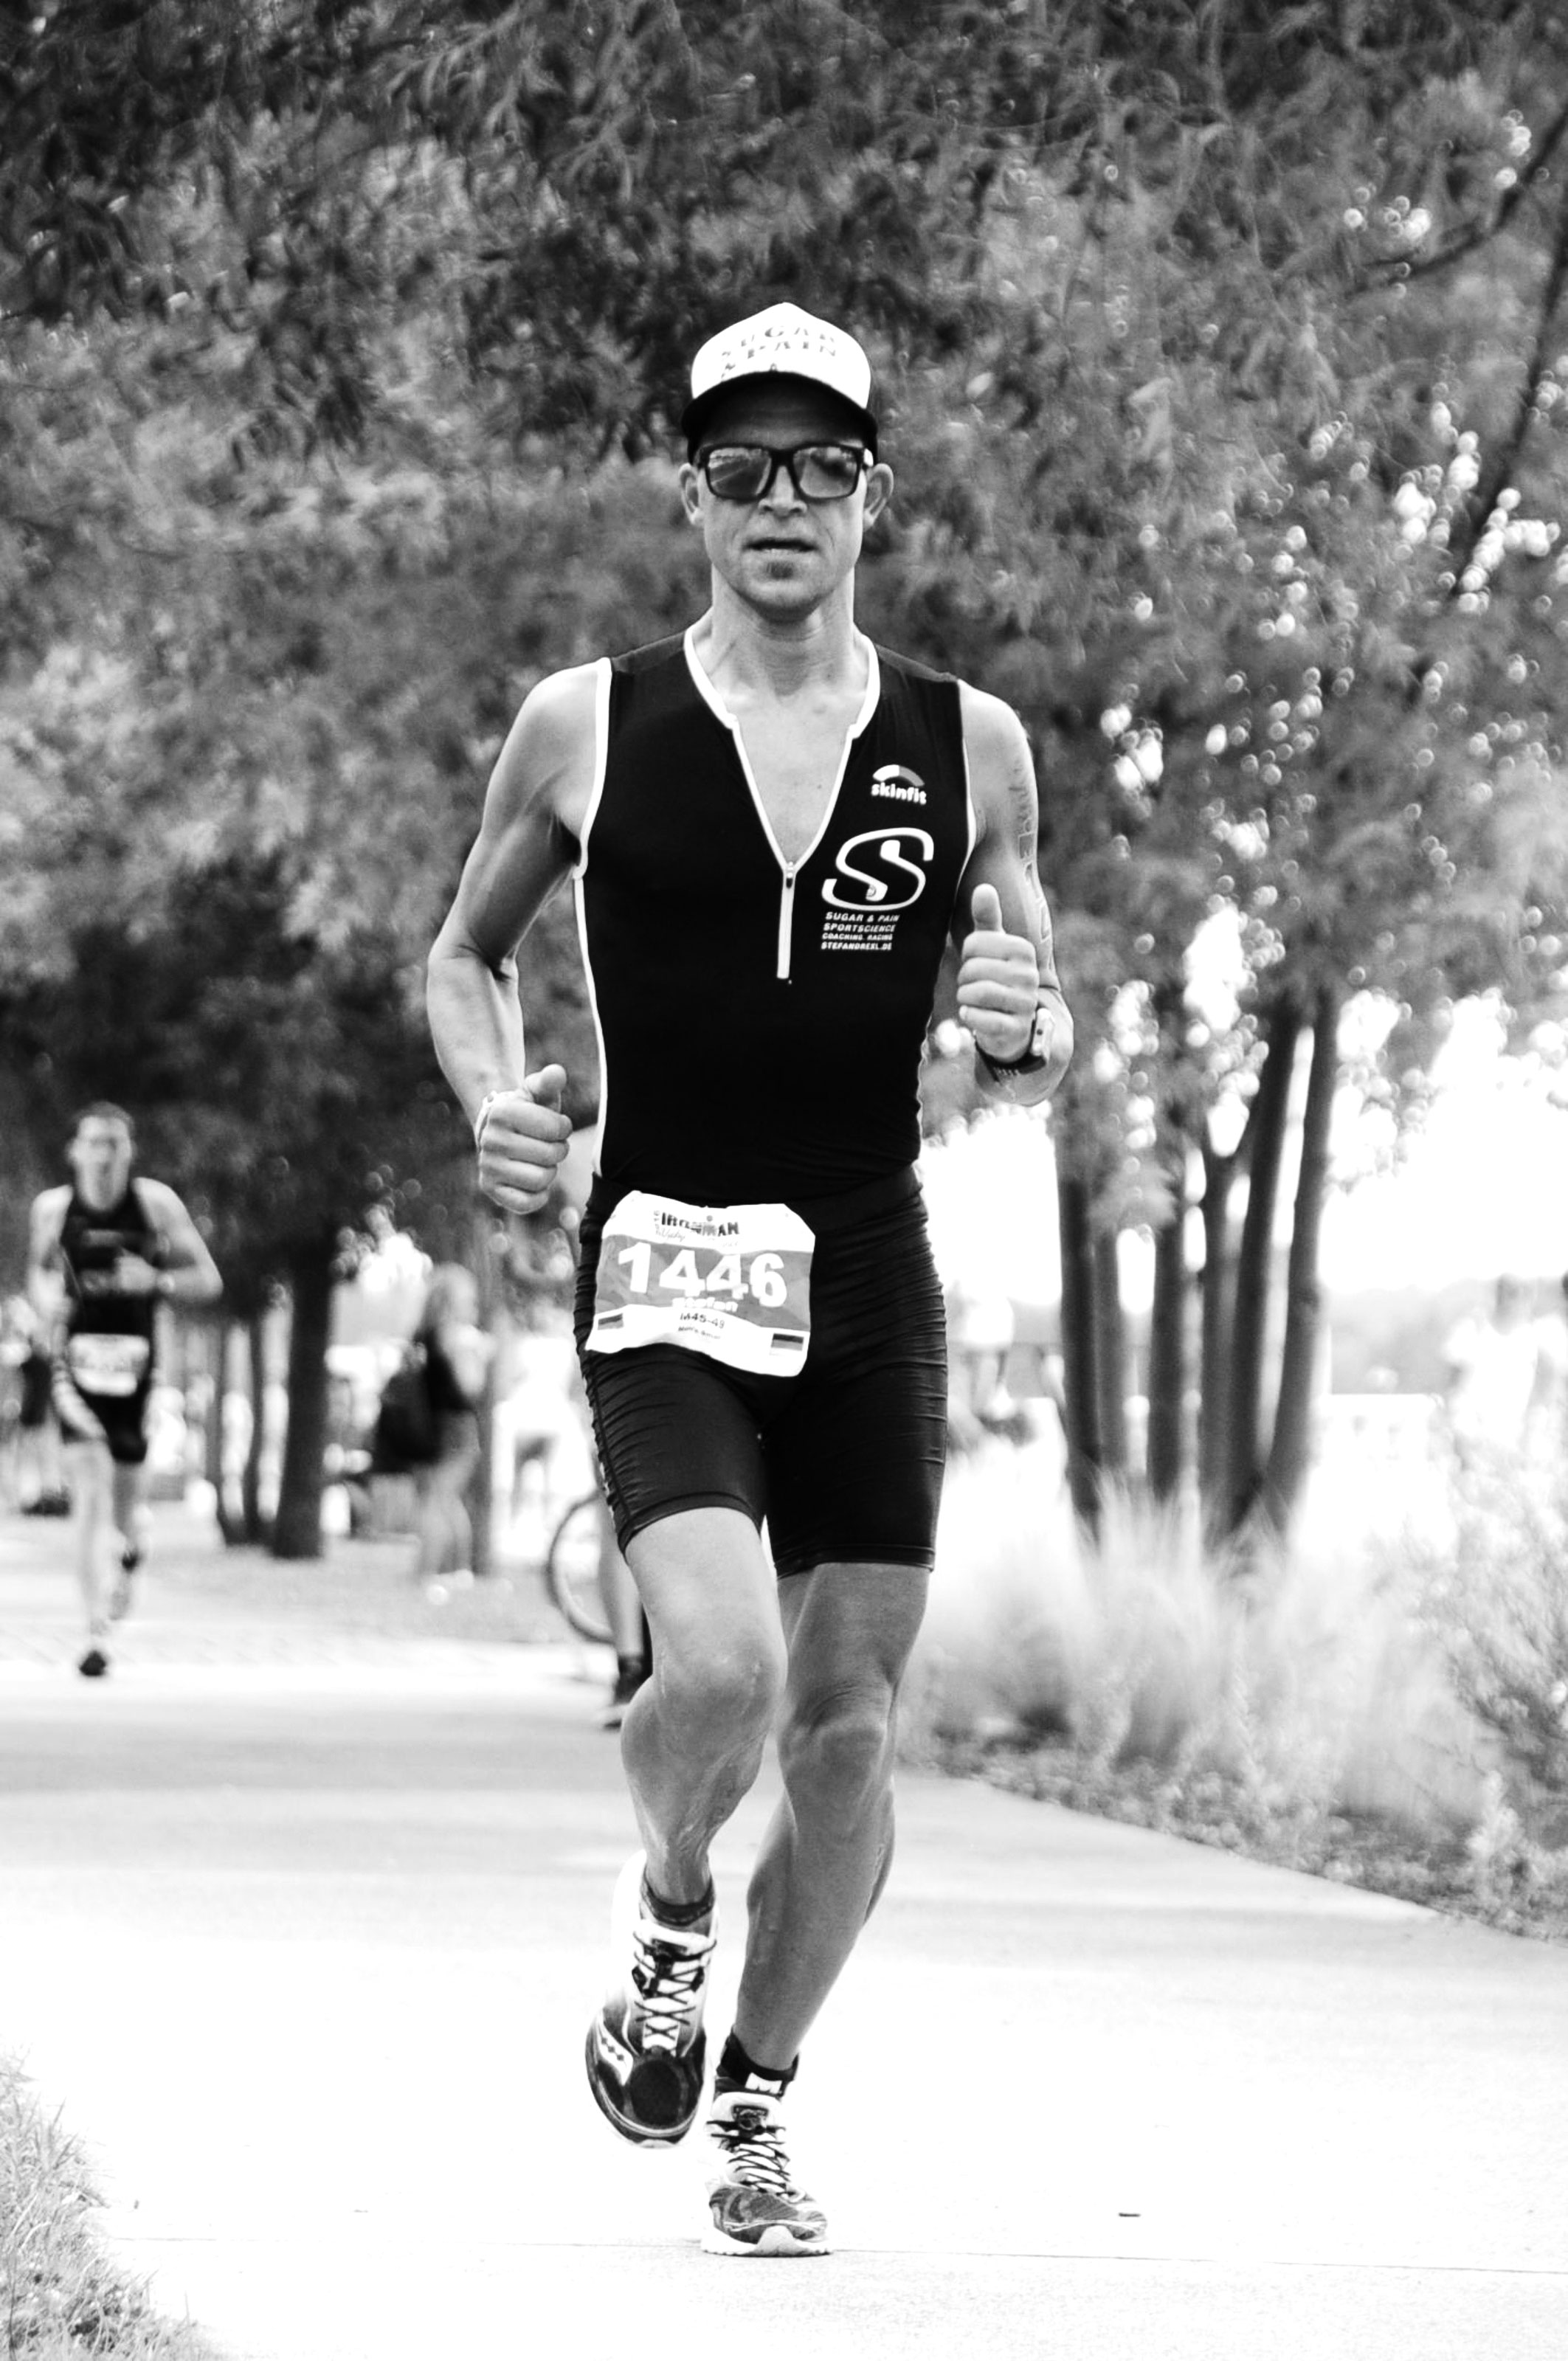 IRONMAN VICHY 2016 The Story: Konzentriert und fokusiert, den Kopf hoch und den Blick immer nach vorne gerichtet läuft's diesmal schnell im Marathon ©stefandrexl.de